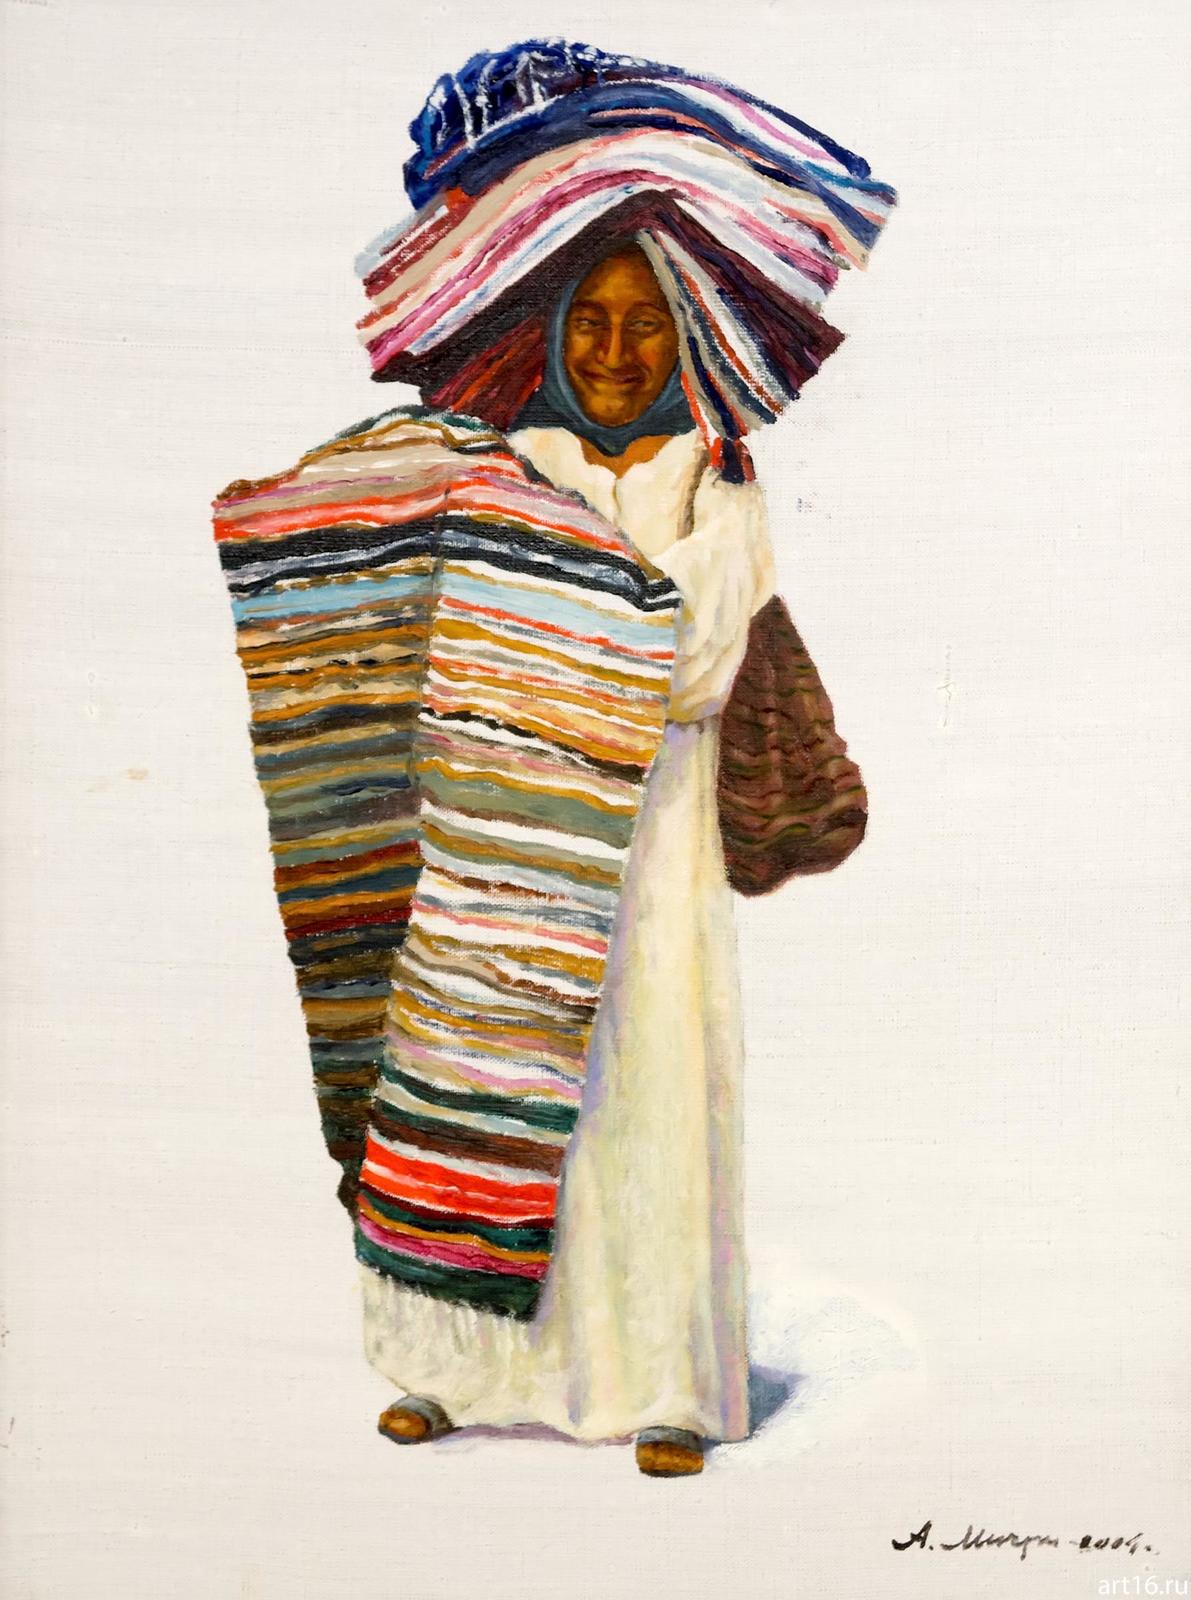 Фото №892962. Египтянка, торгующая коврами. 2004. Мичри А.И. 1934 